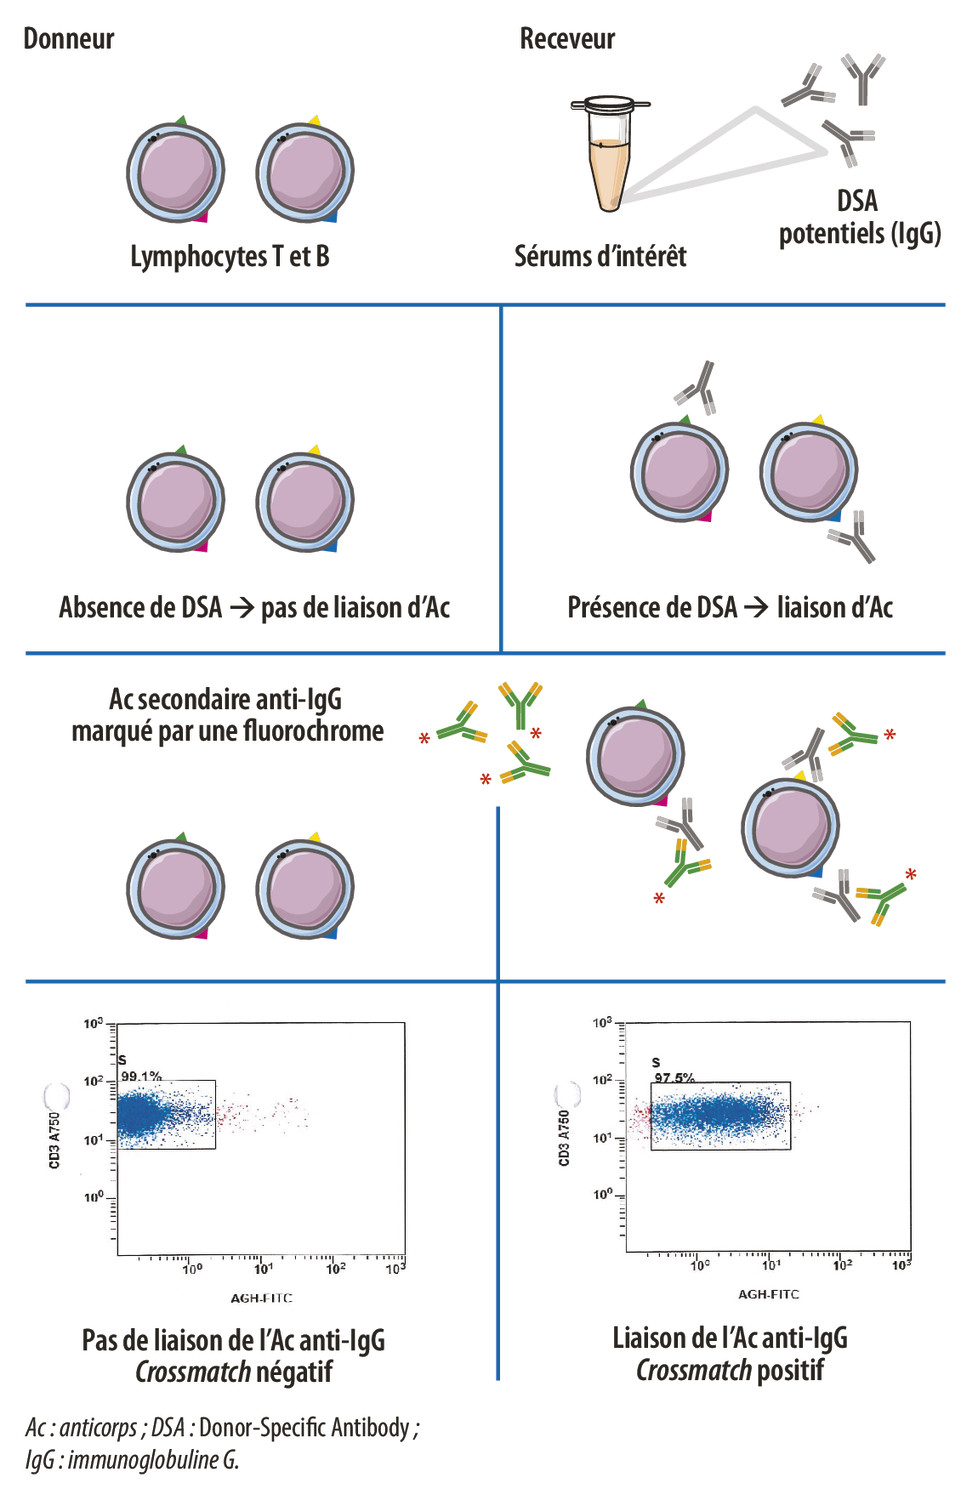 Anticorps anti-HLA : méthodes cellulaires et <i>crossmatch</i> - Figure 2